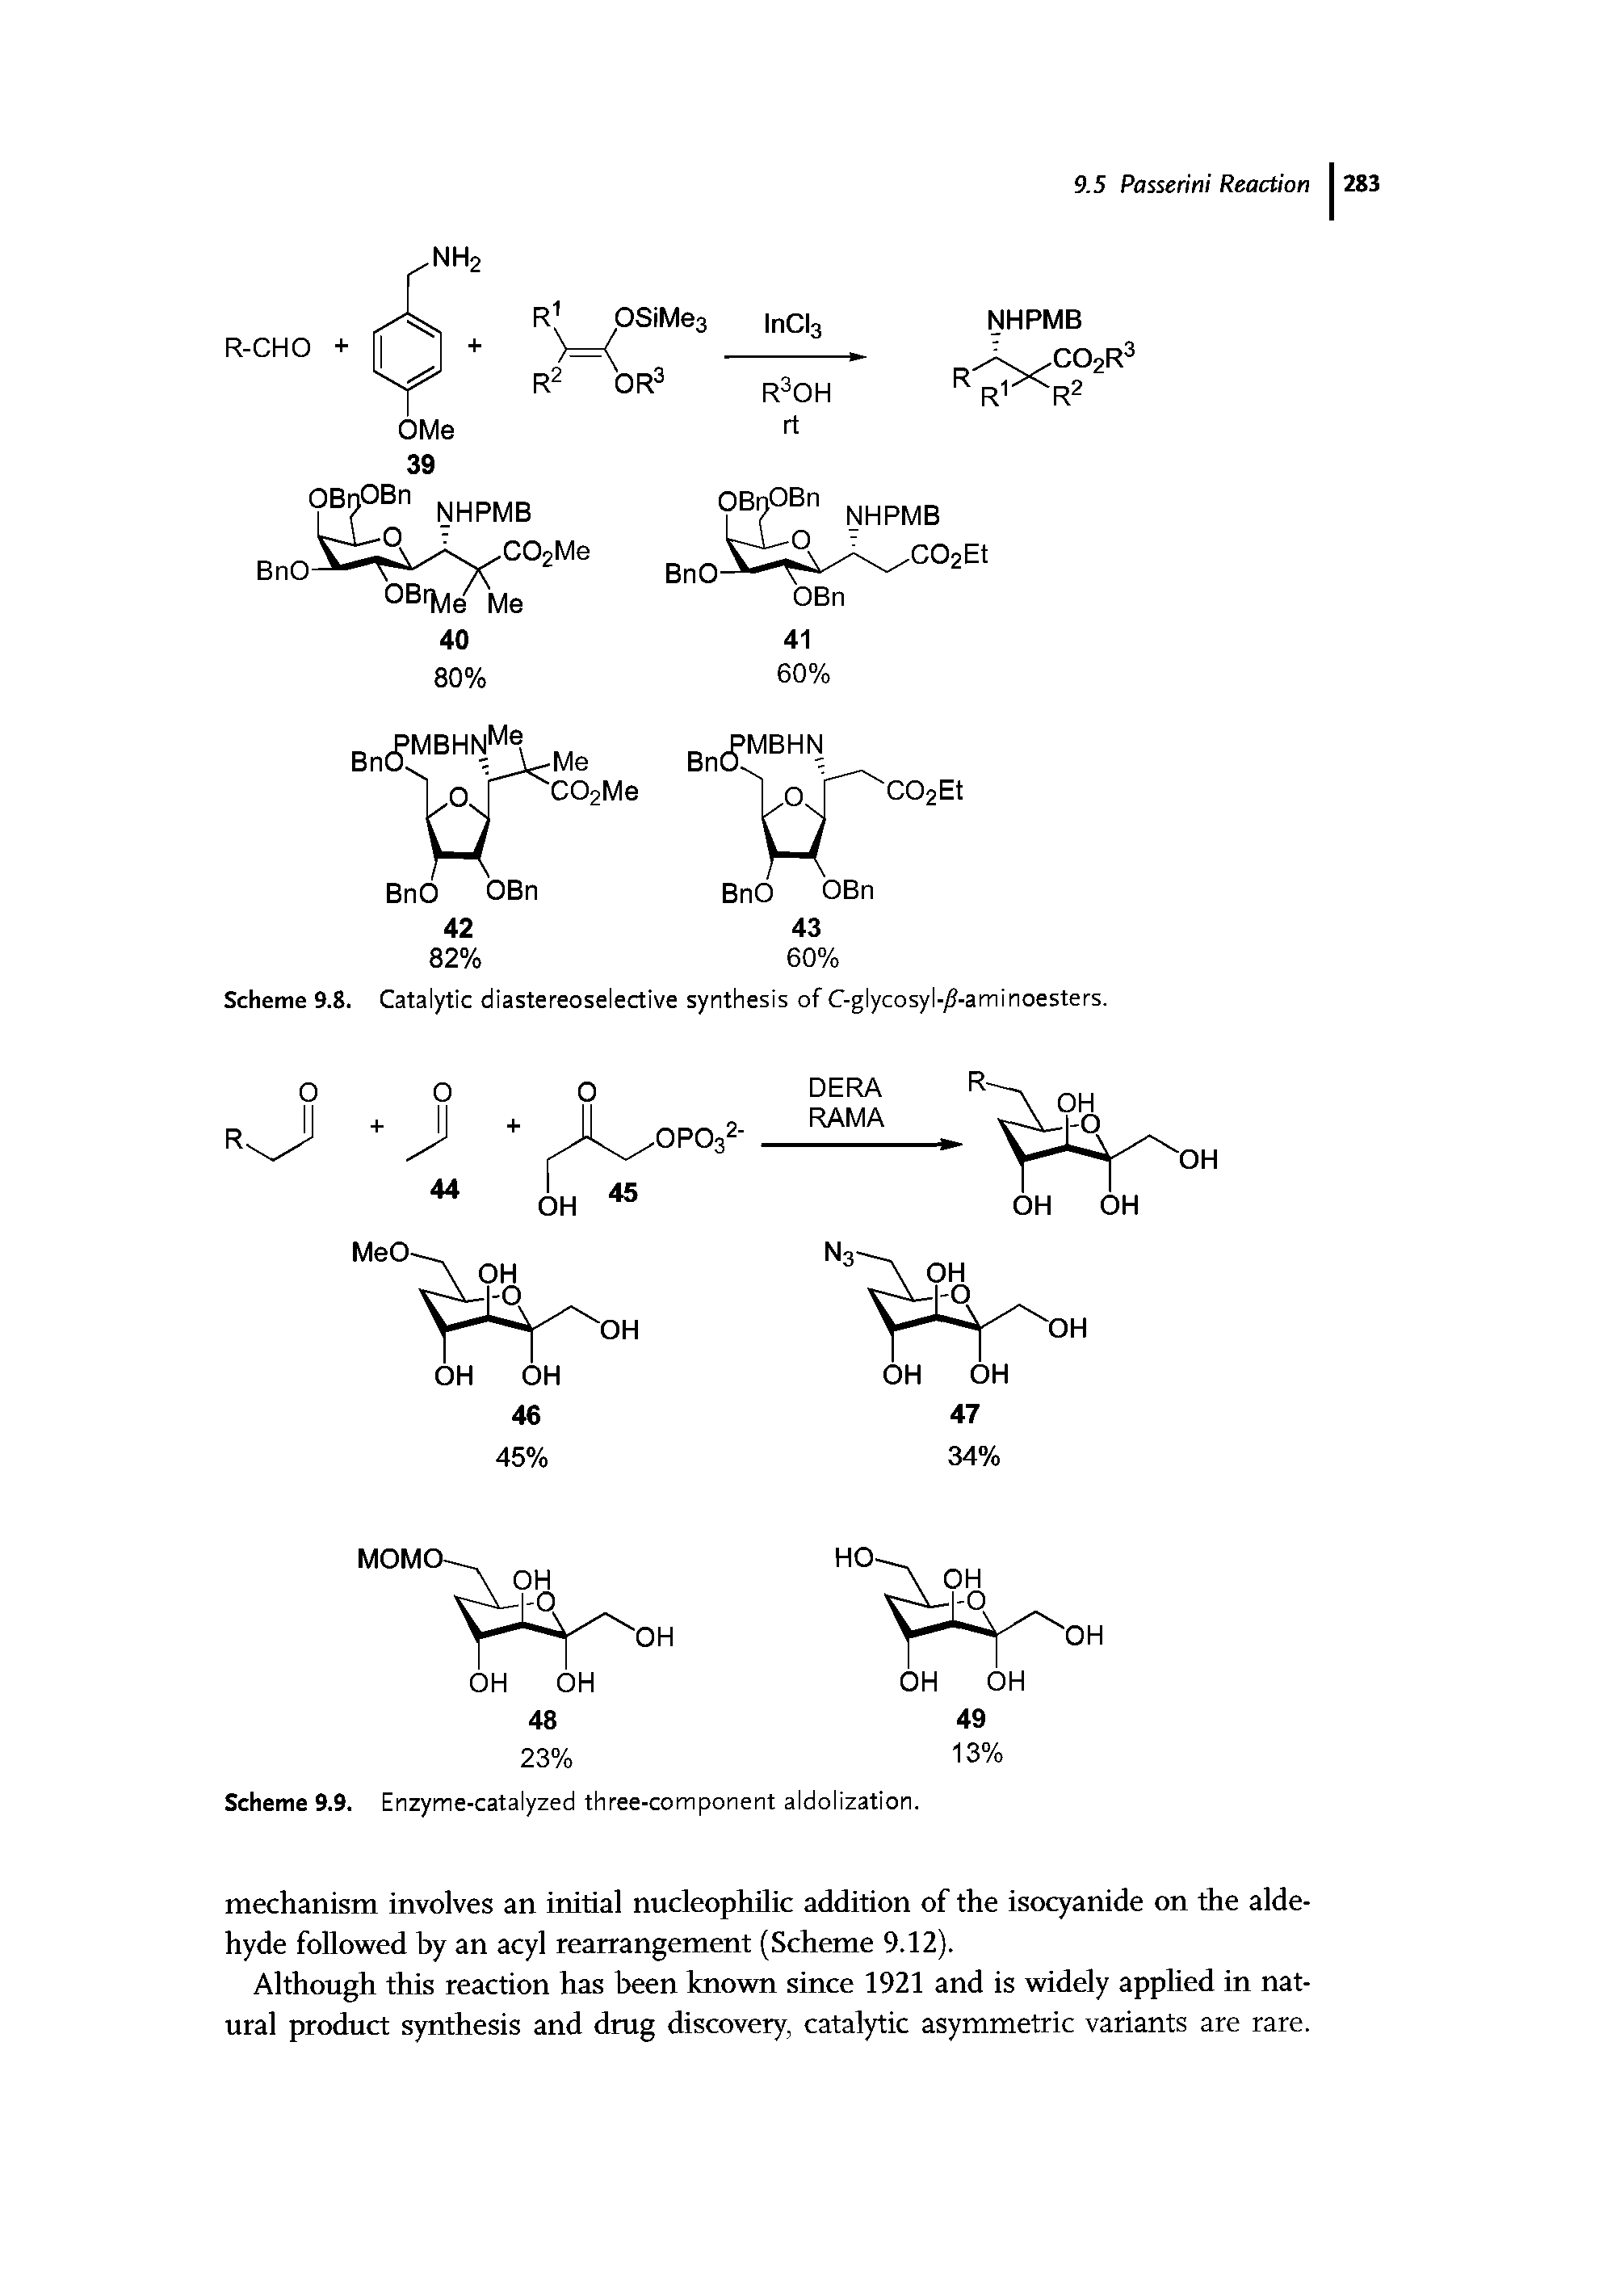 Scheme 9.9. Enzyme-catalyzed three-component aldolization.